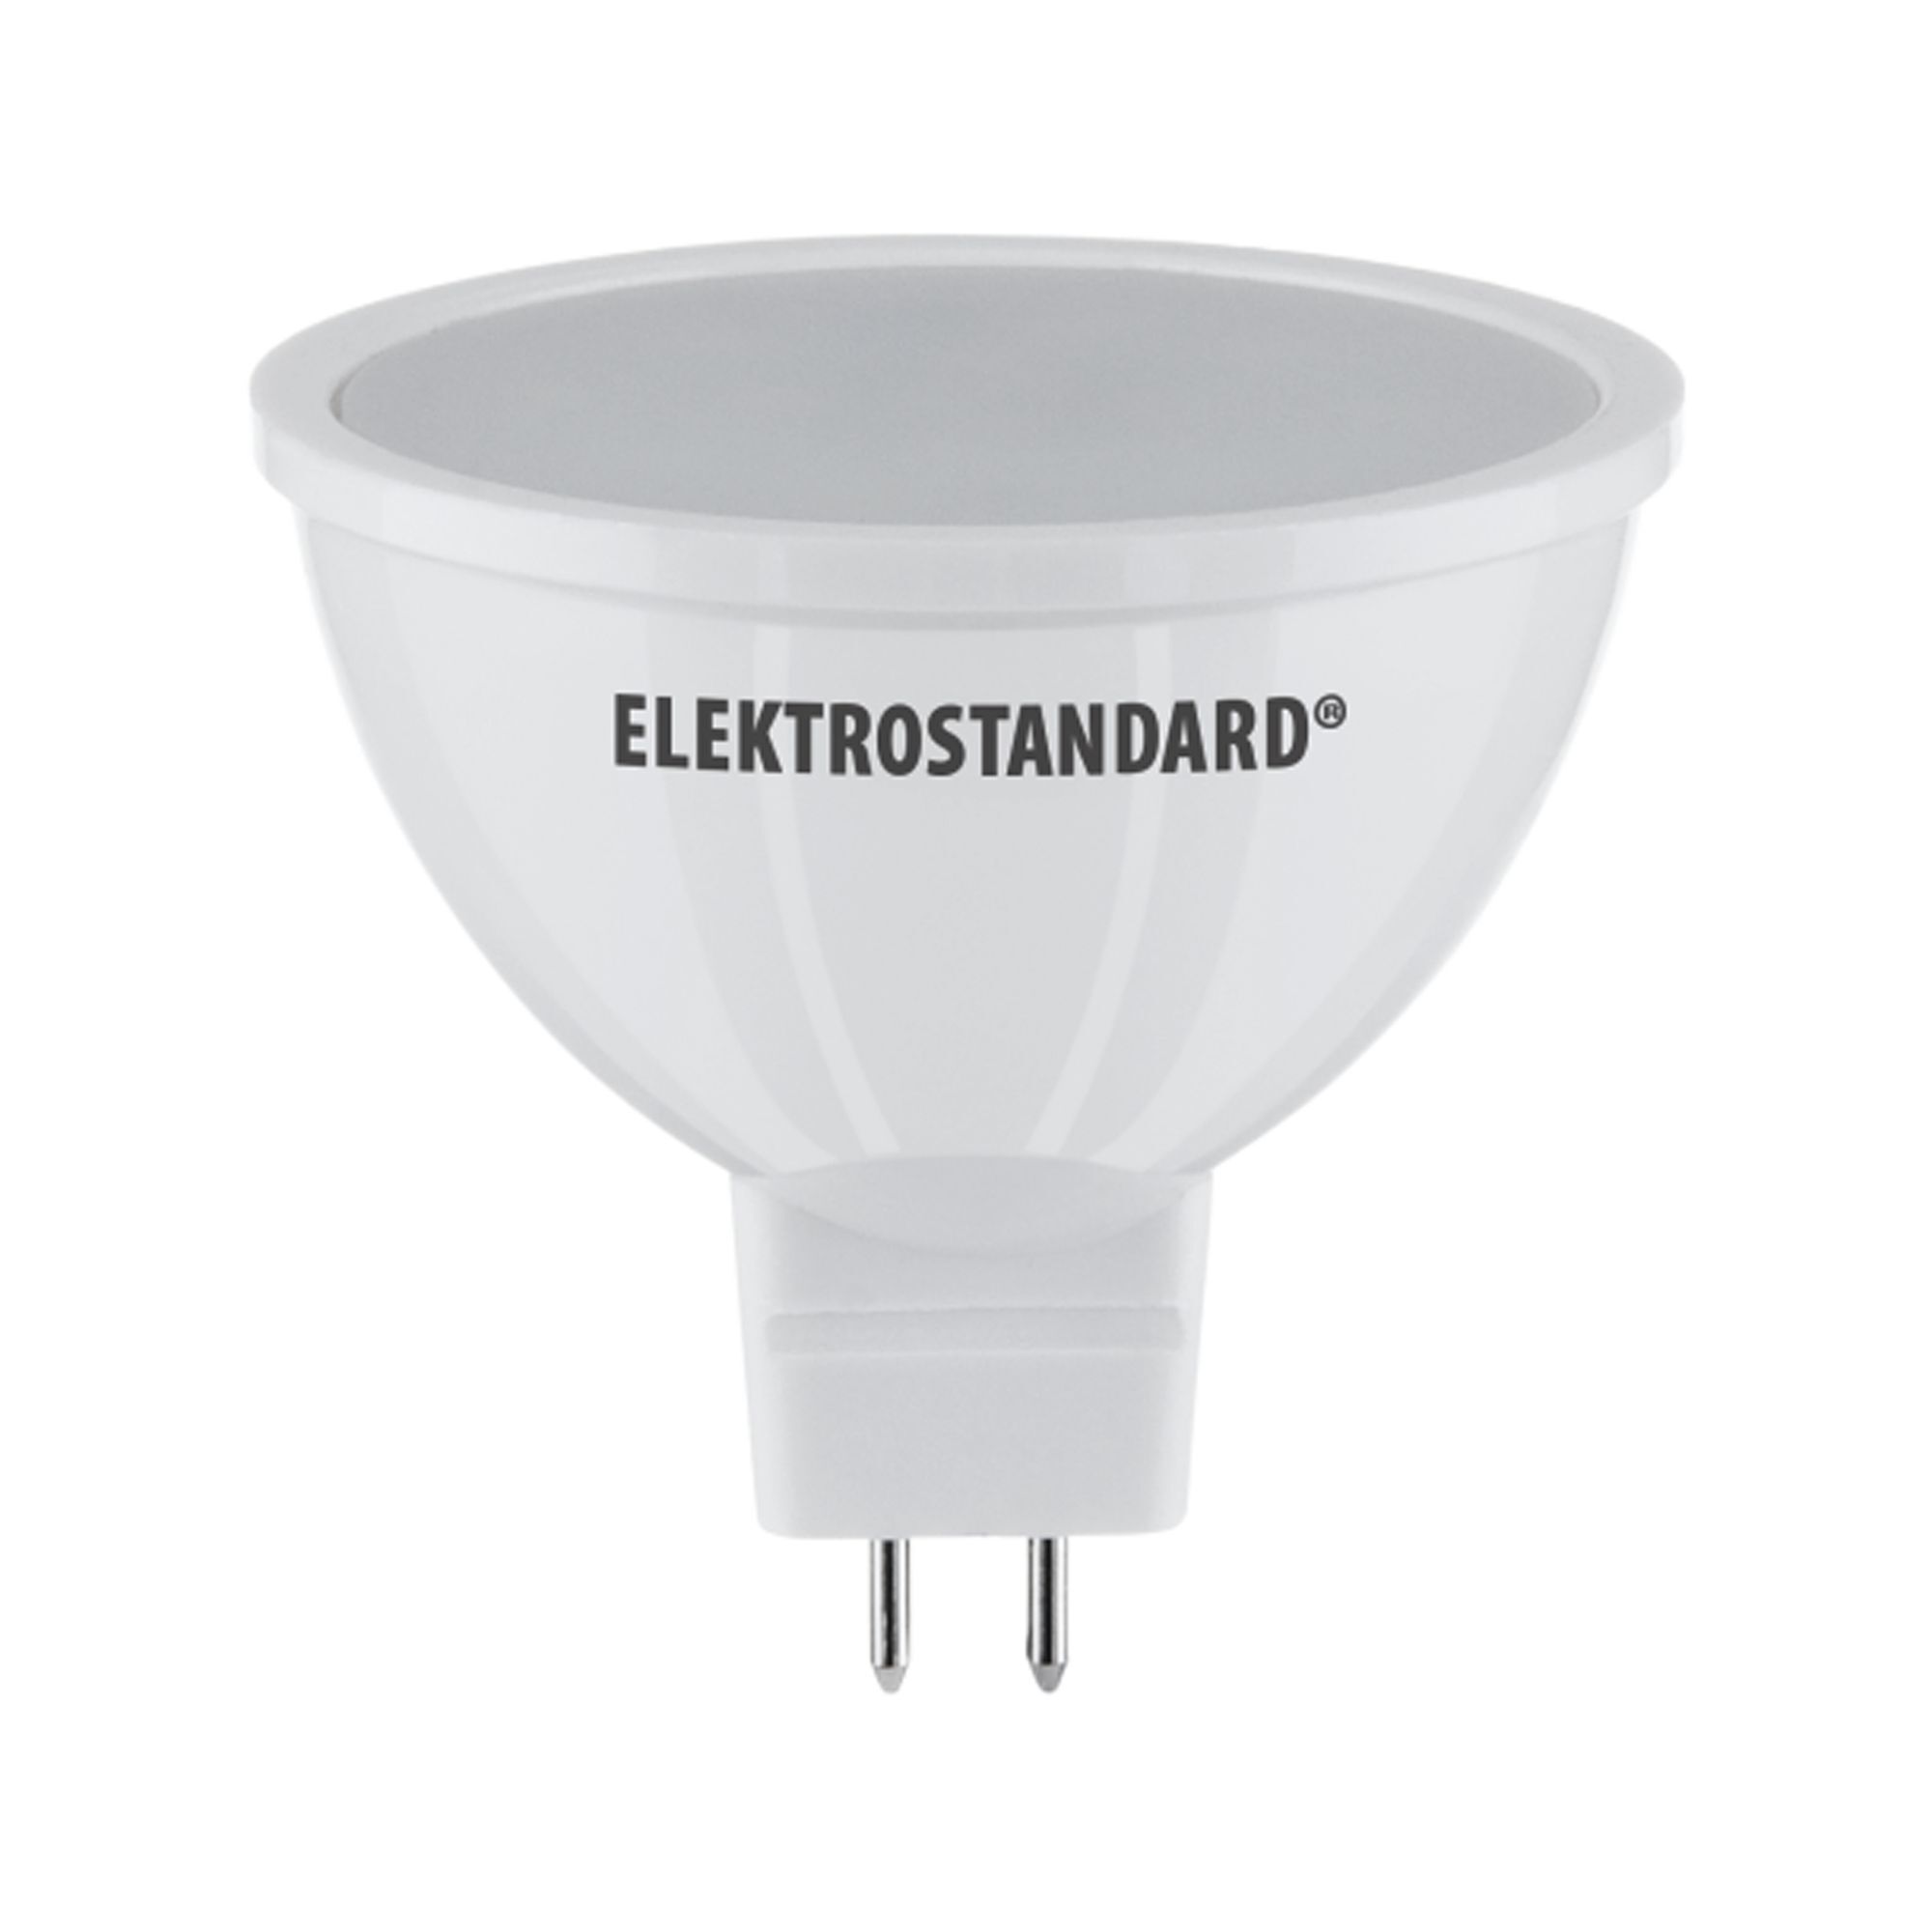 Лампа светодиодная Elektrostandard G5.3 JCDR 7 Вт 6500К холодный свет 220 В рефлектор (BLG5306)